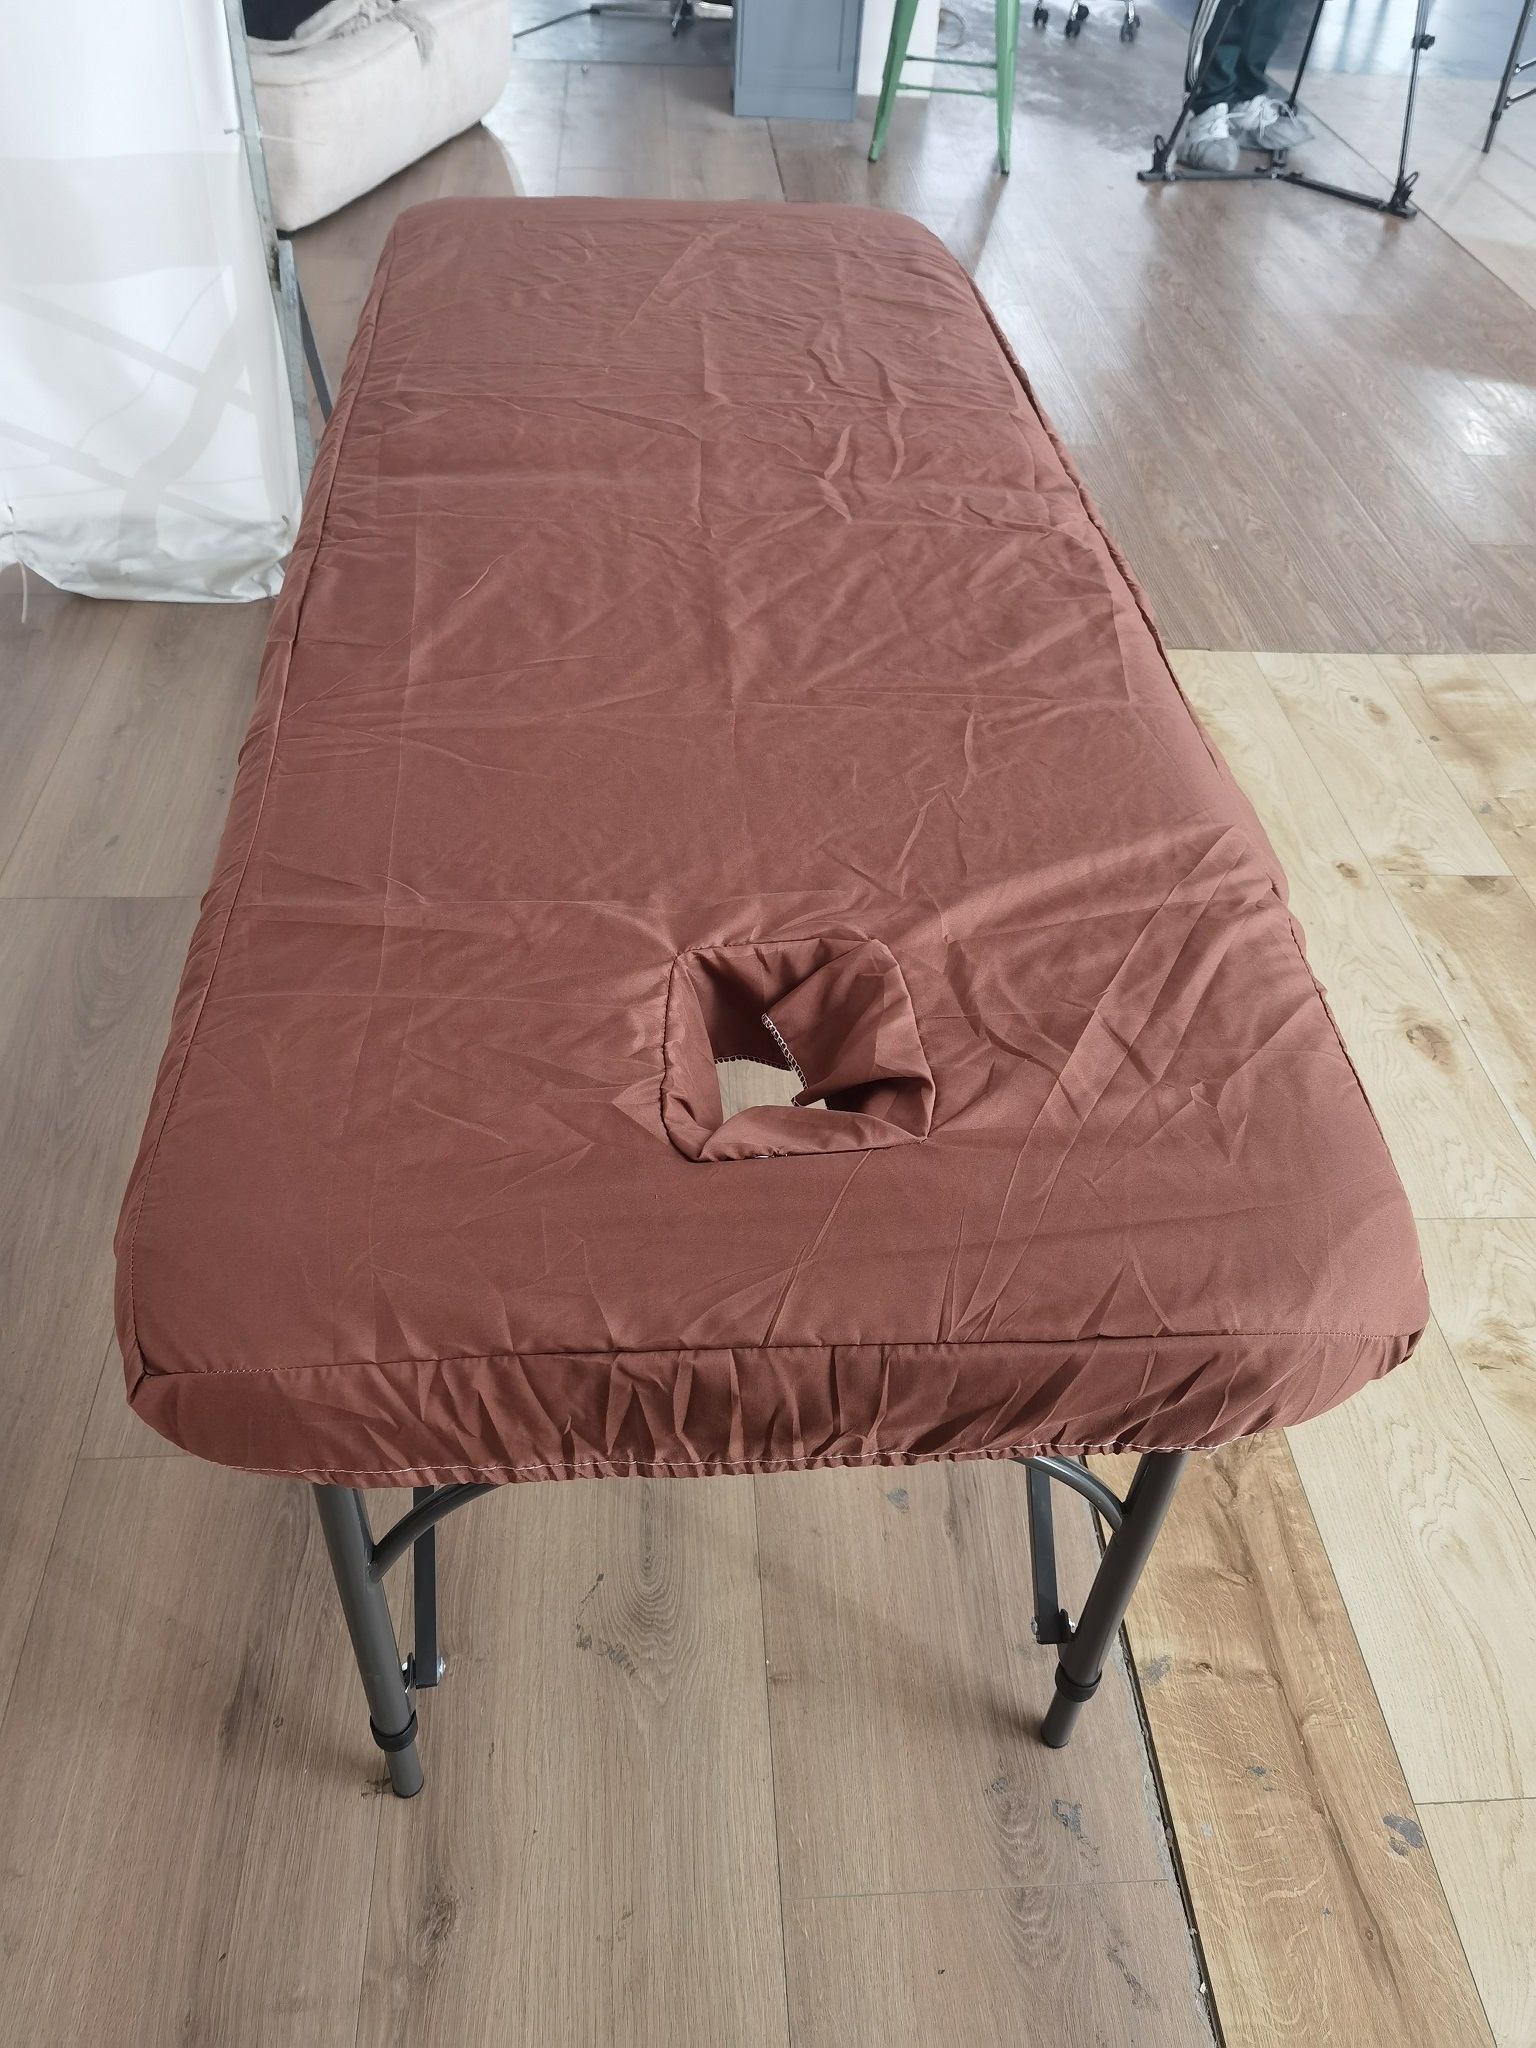 推拿按摩床床罩折叠美容床床罩 可洗 灰色巧克力色亲肤棉纯色床罩